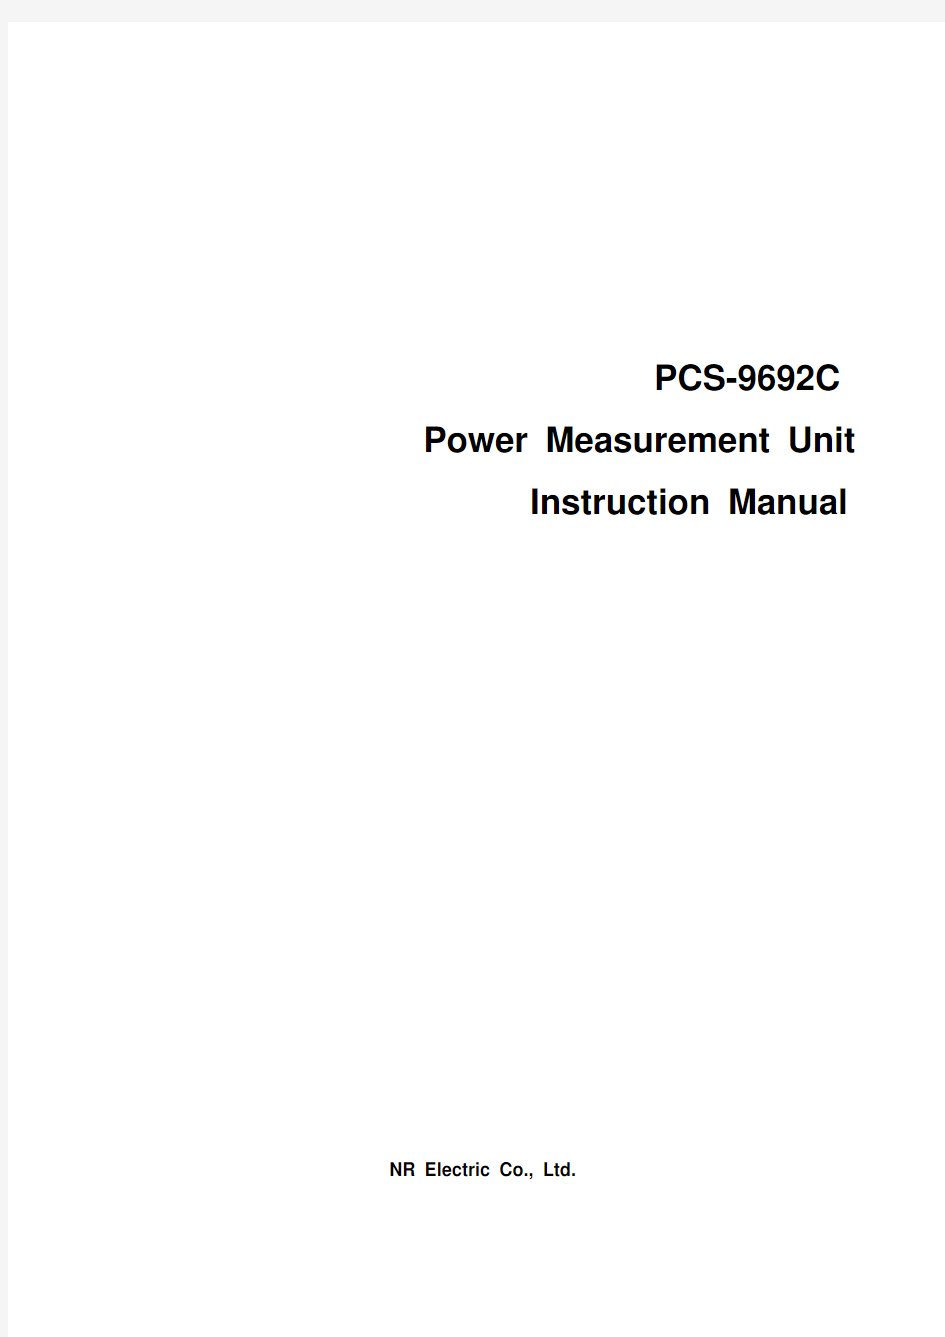 PCS-9692C_X_Instruction Manual_EN_Domestic General_X_R1.00_(EN_DYBH0681.0086.0001)